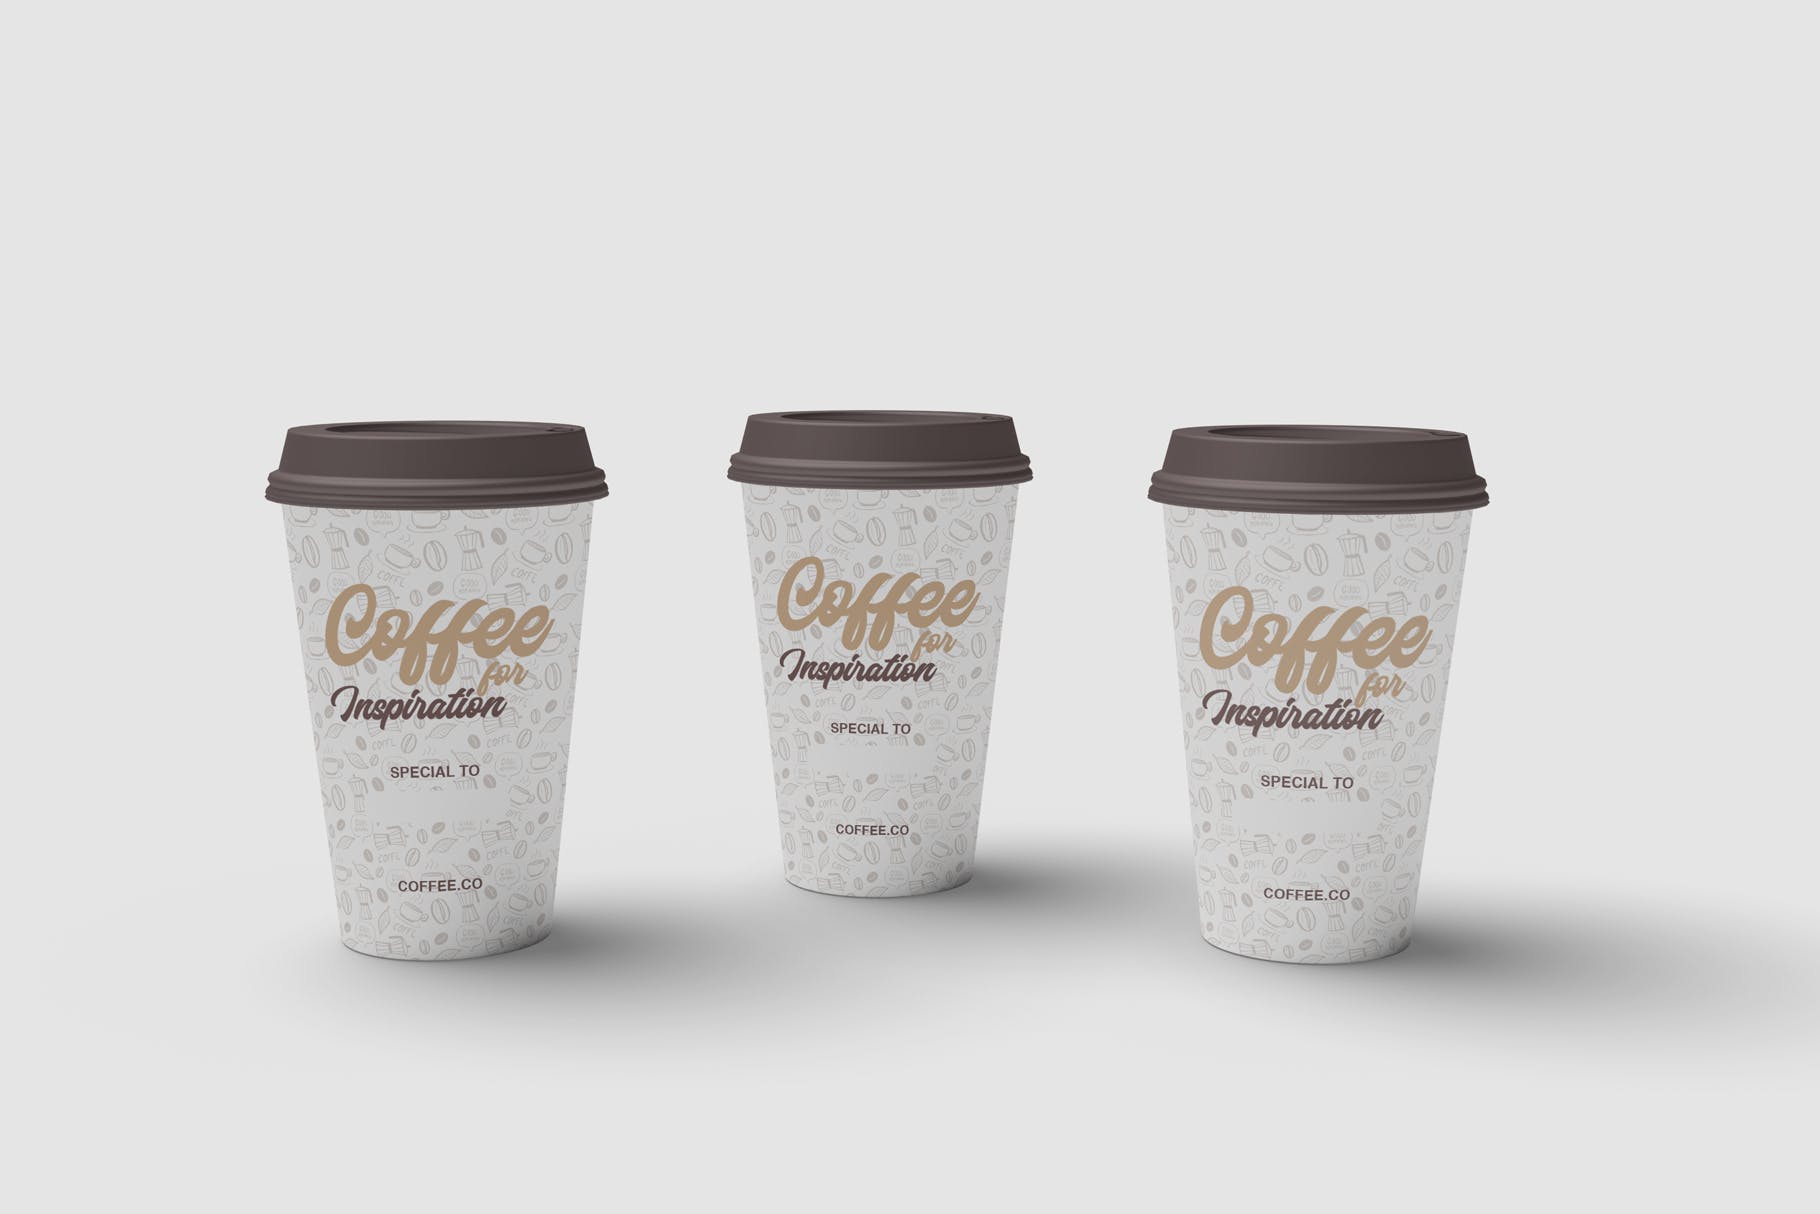 咖啡纸杯外观图案设计预览素材库精选 Cup of Coffee Mockup插图(2)